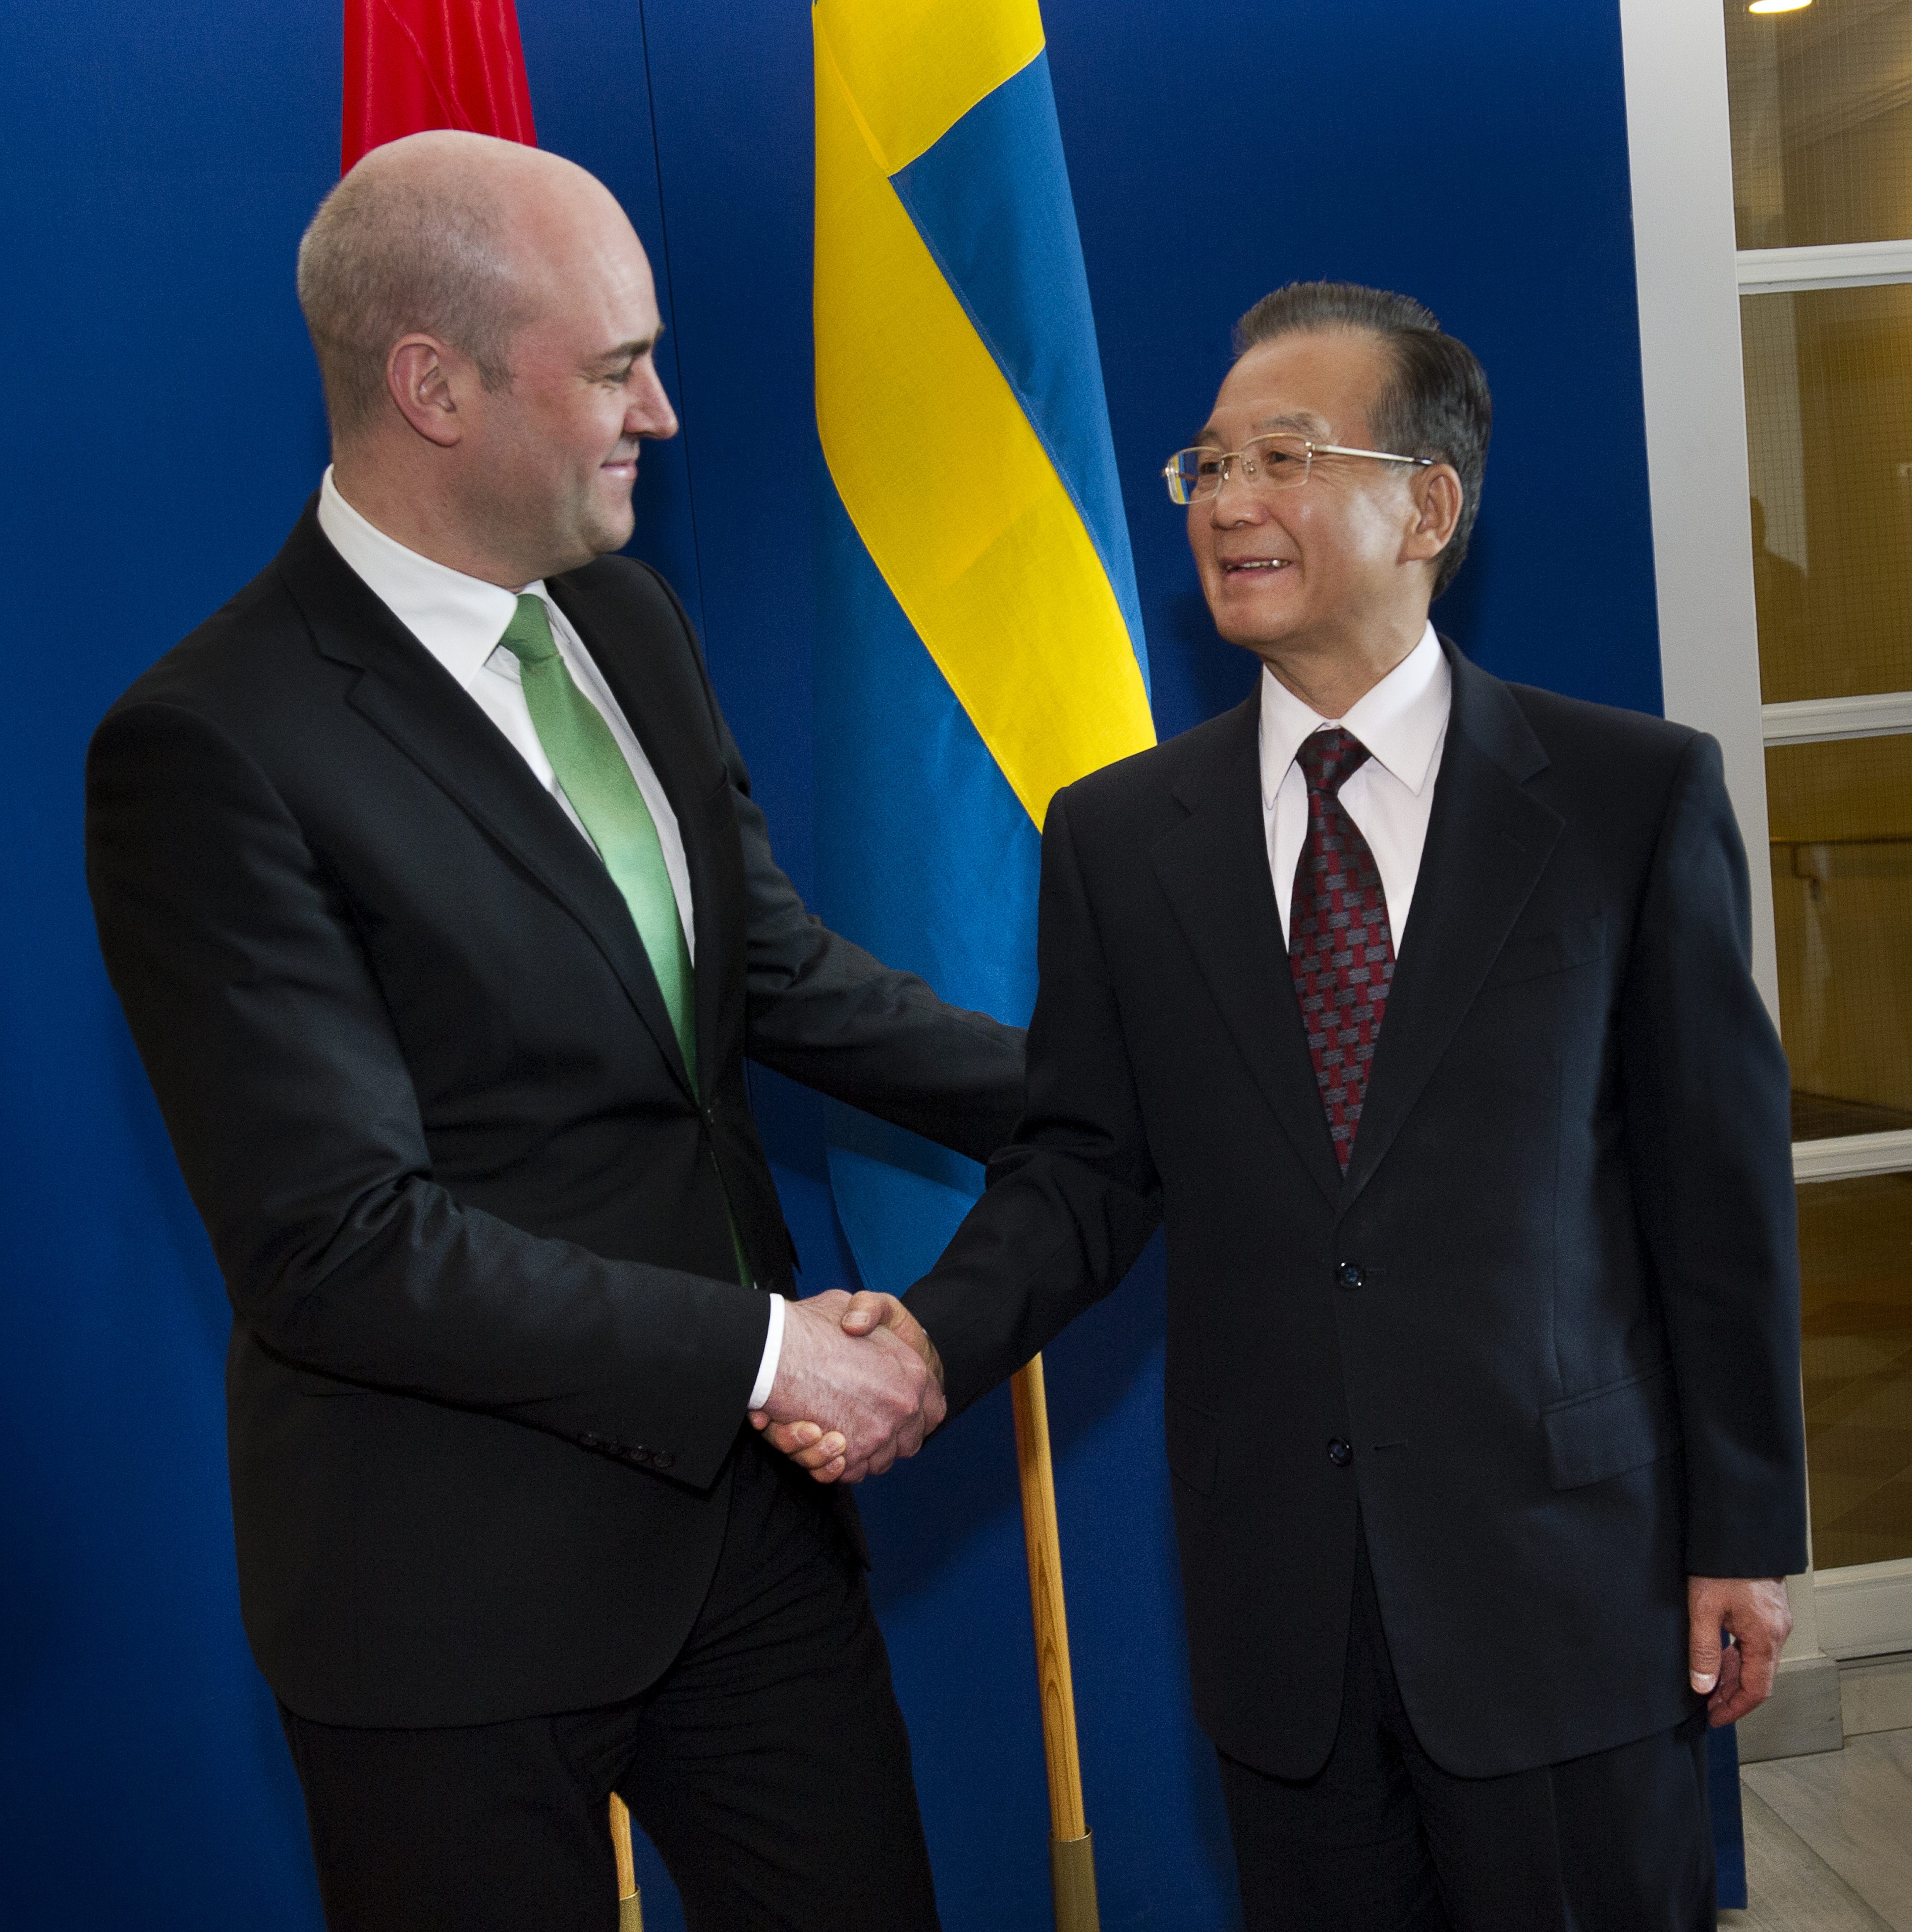 Premiärministern sa att han ser en viktigt partner i Sverige.